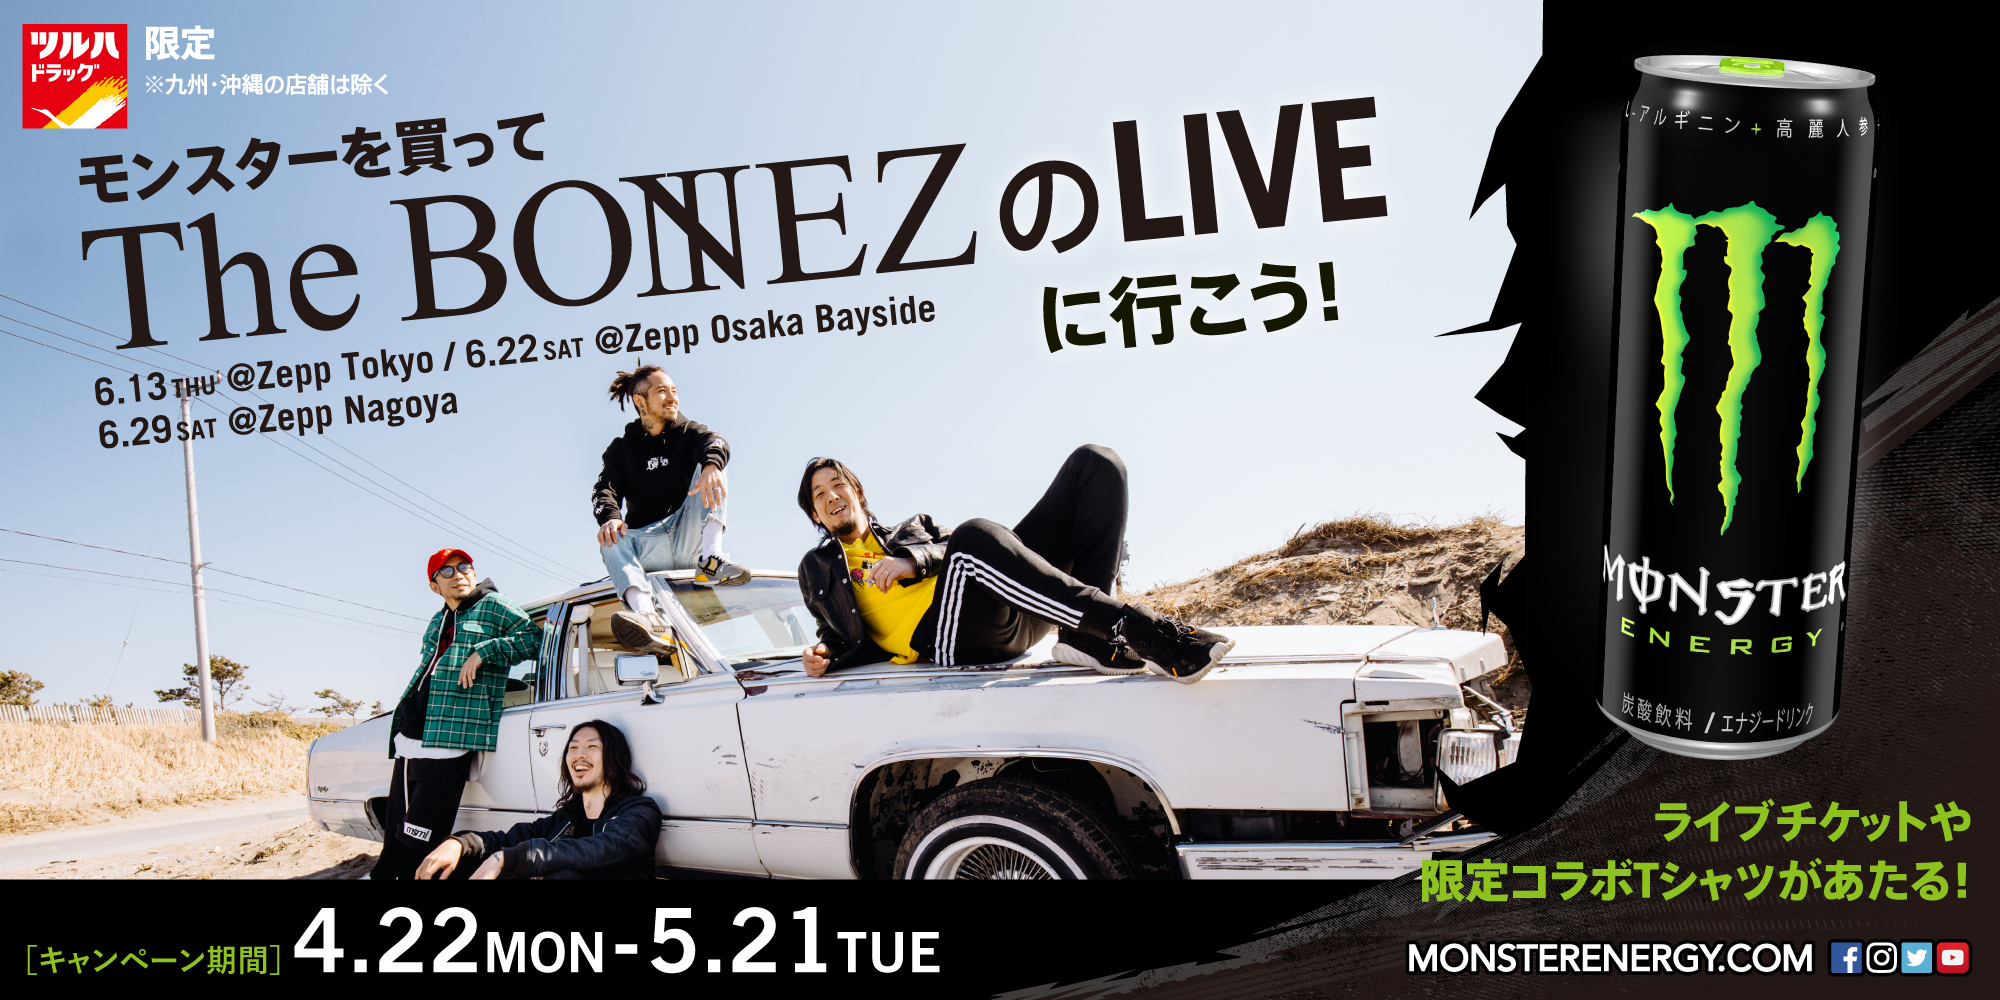 既に東京公演のチケットは完売！入手困難な東/阪/名3公演のZepp Tour